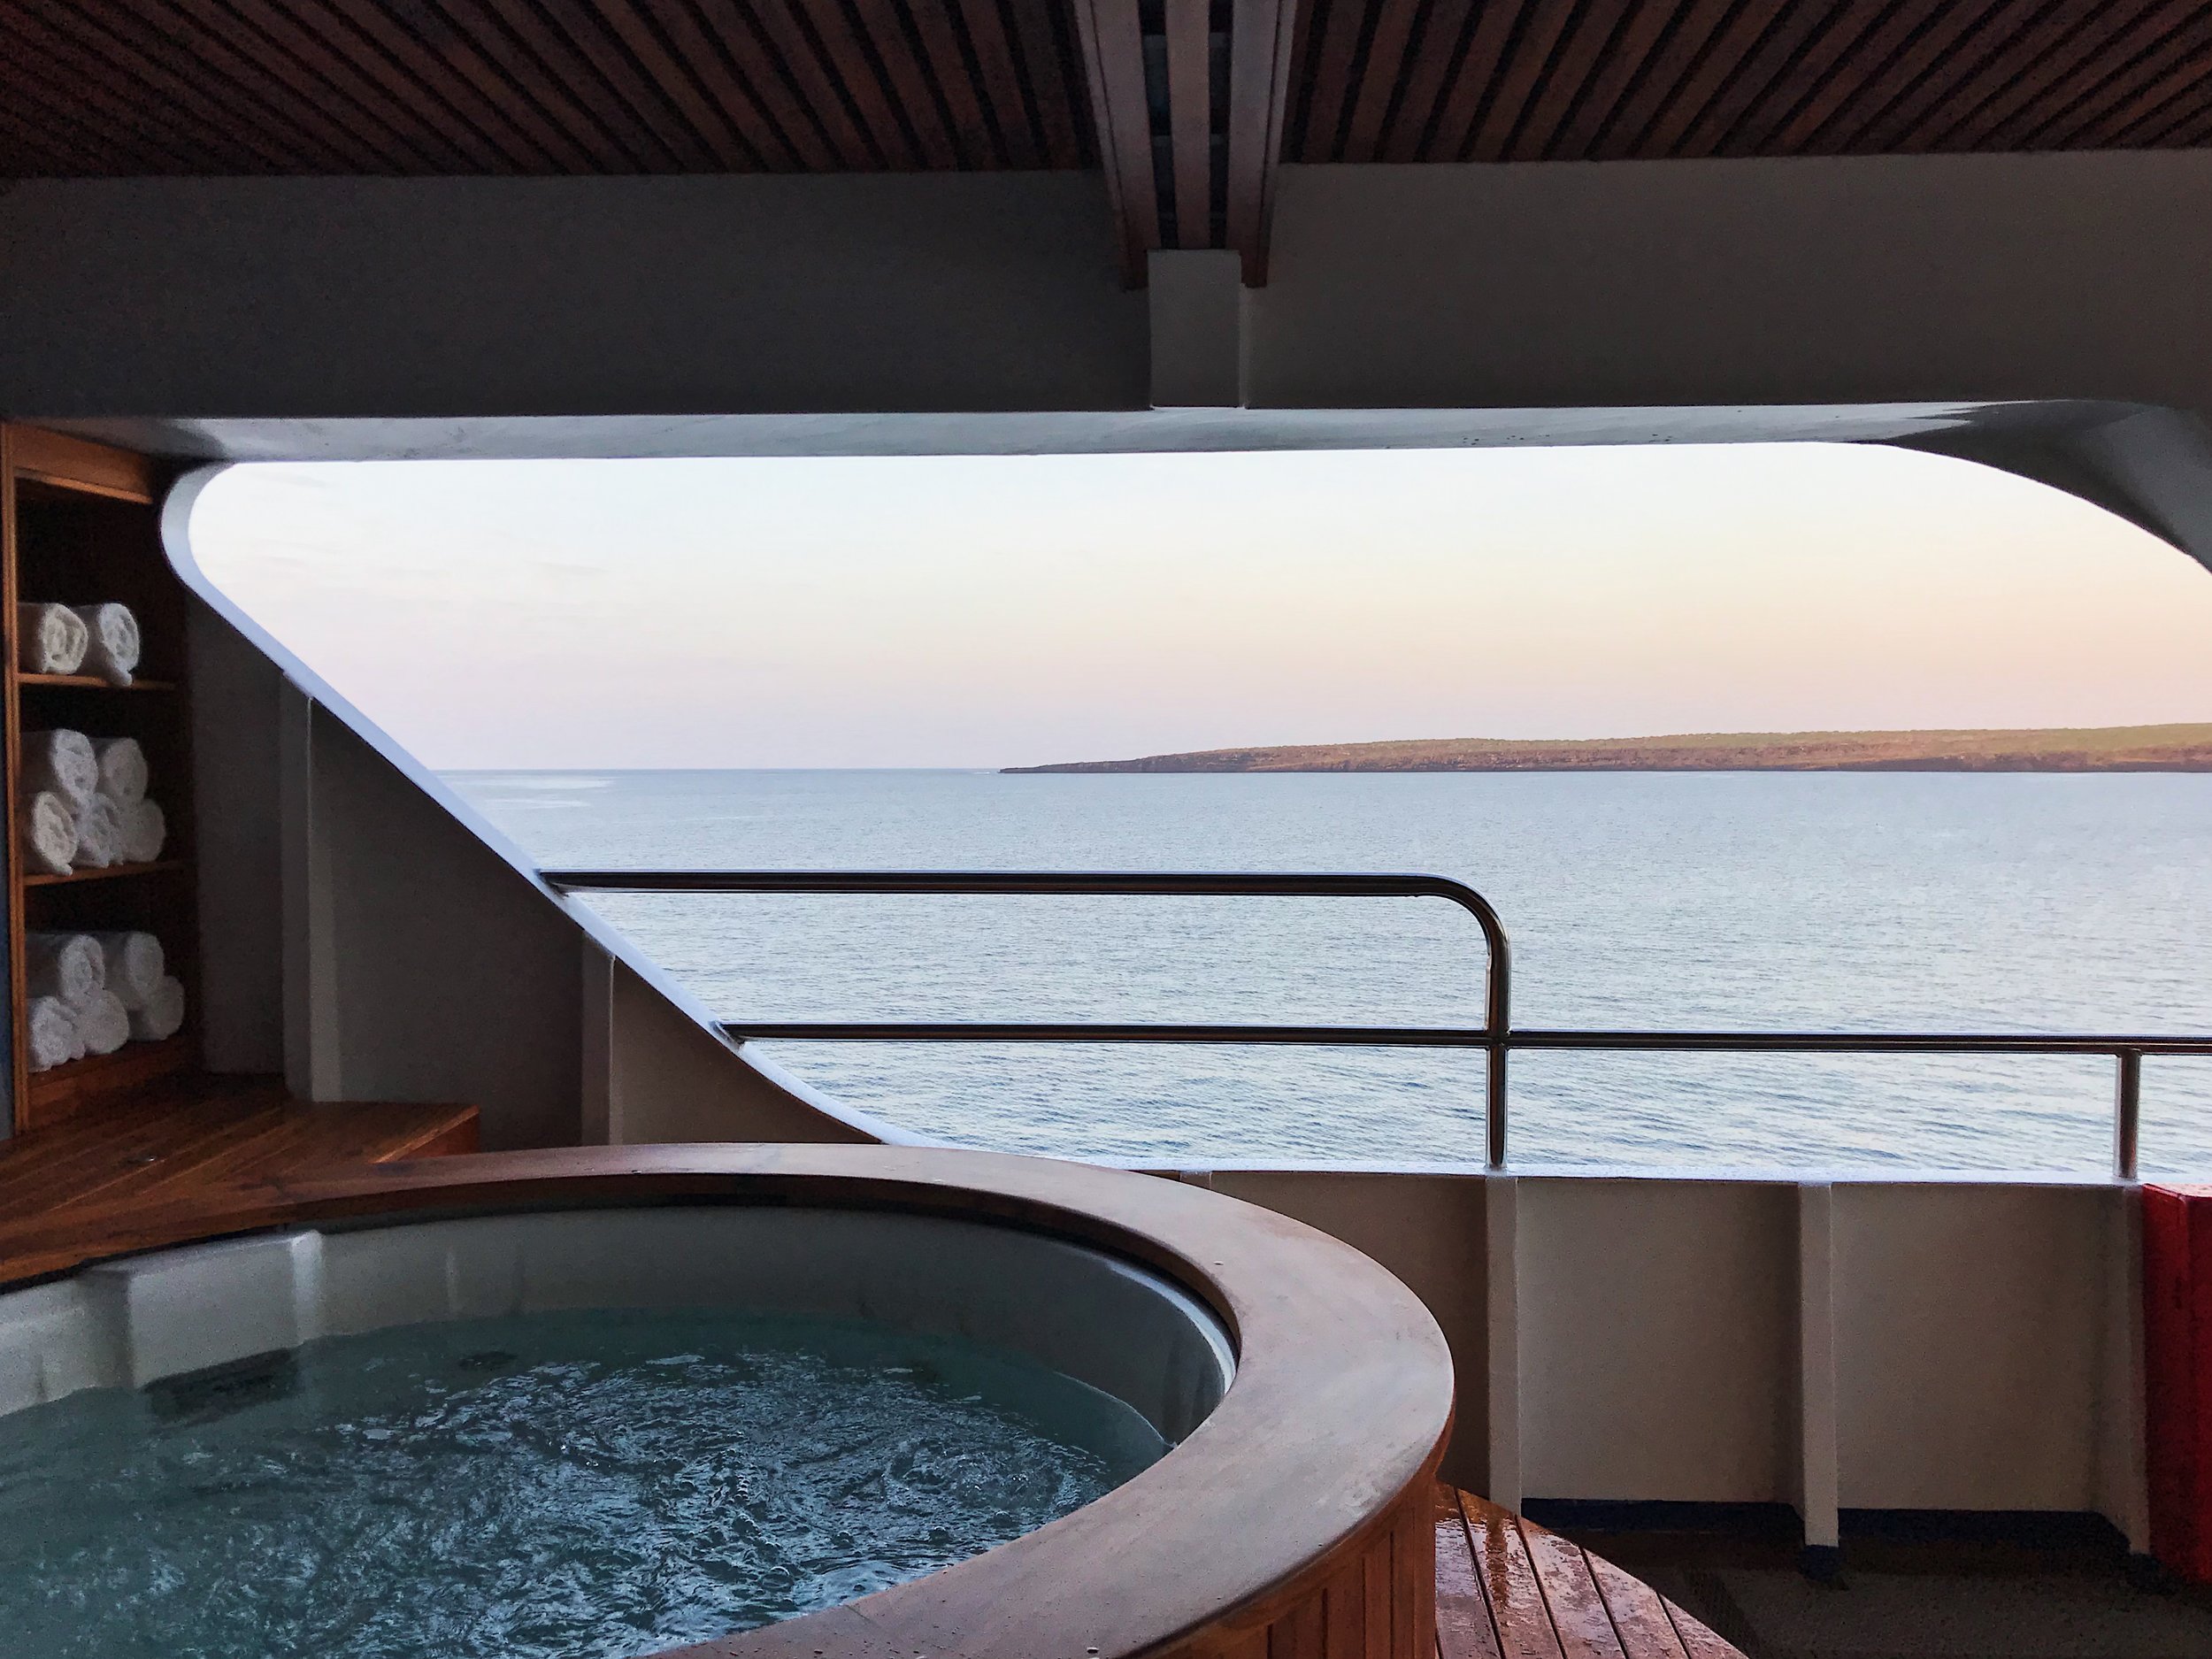  hot tub and ocean view,   Santa Cruz II   